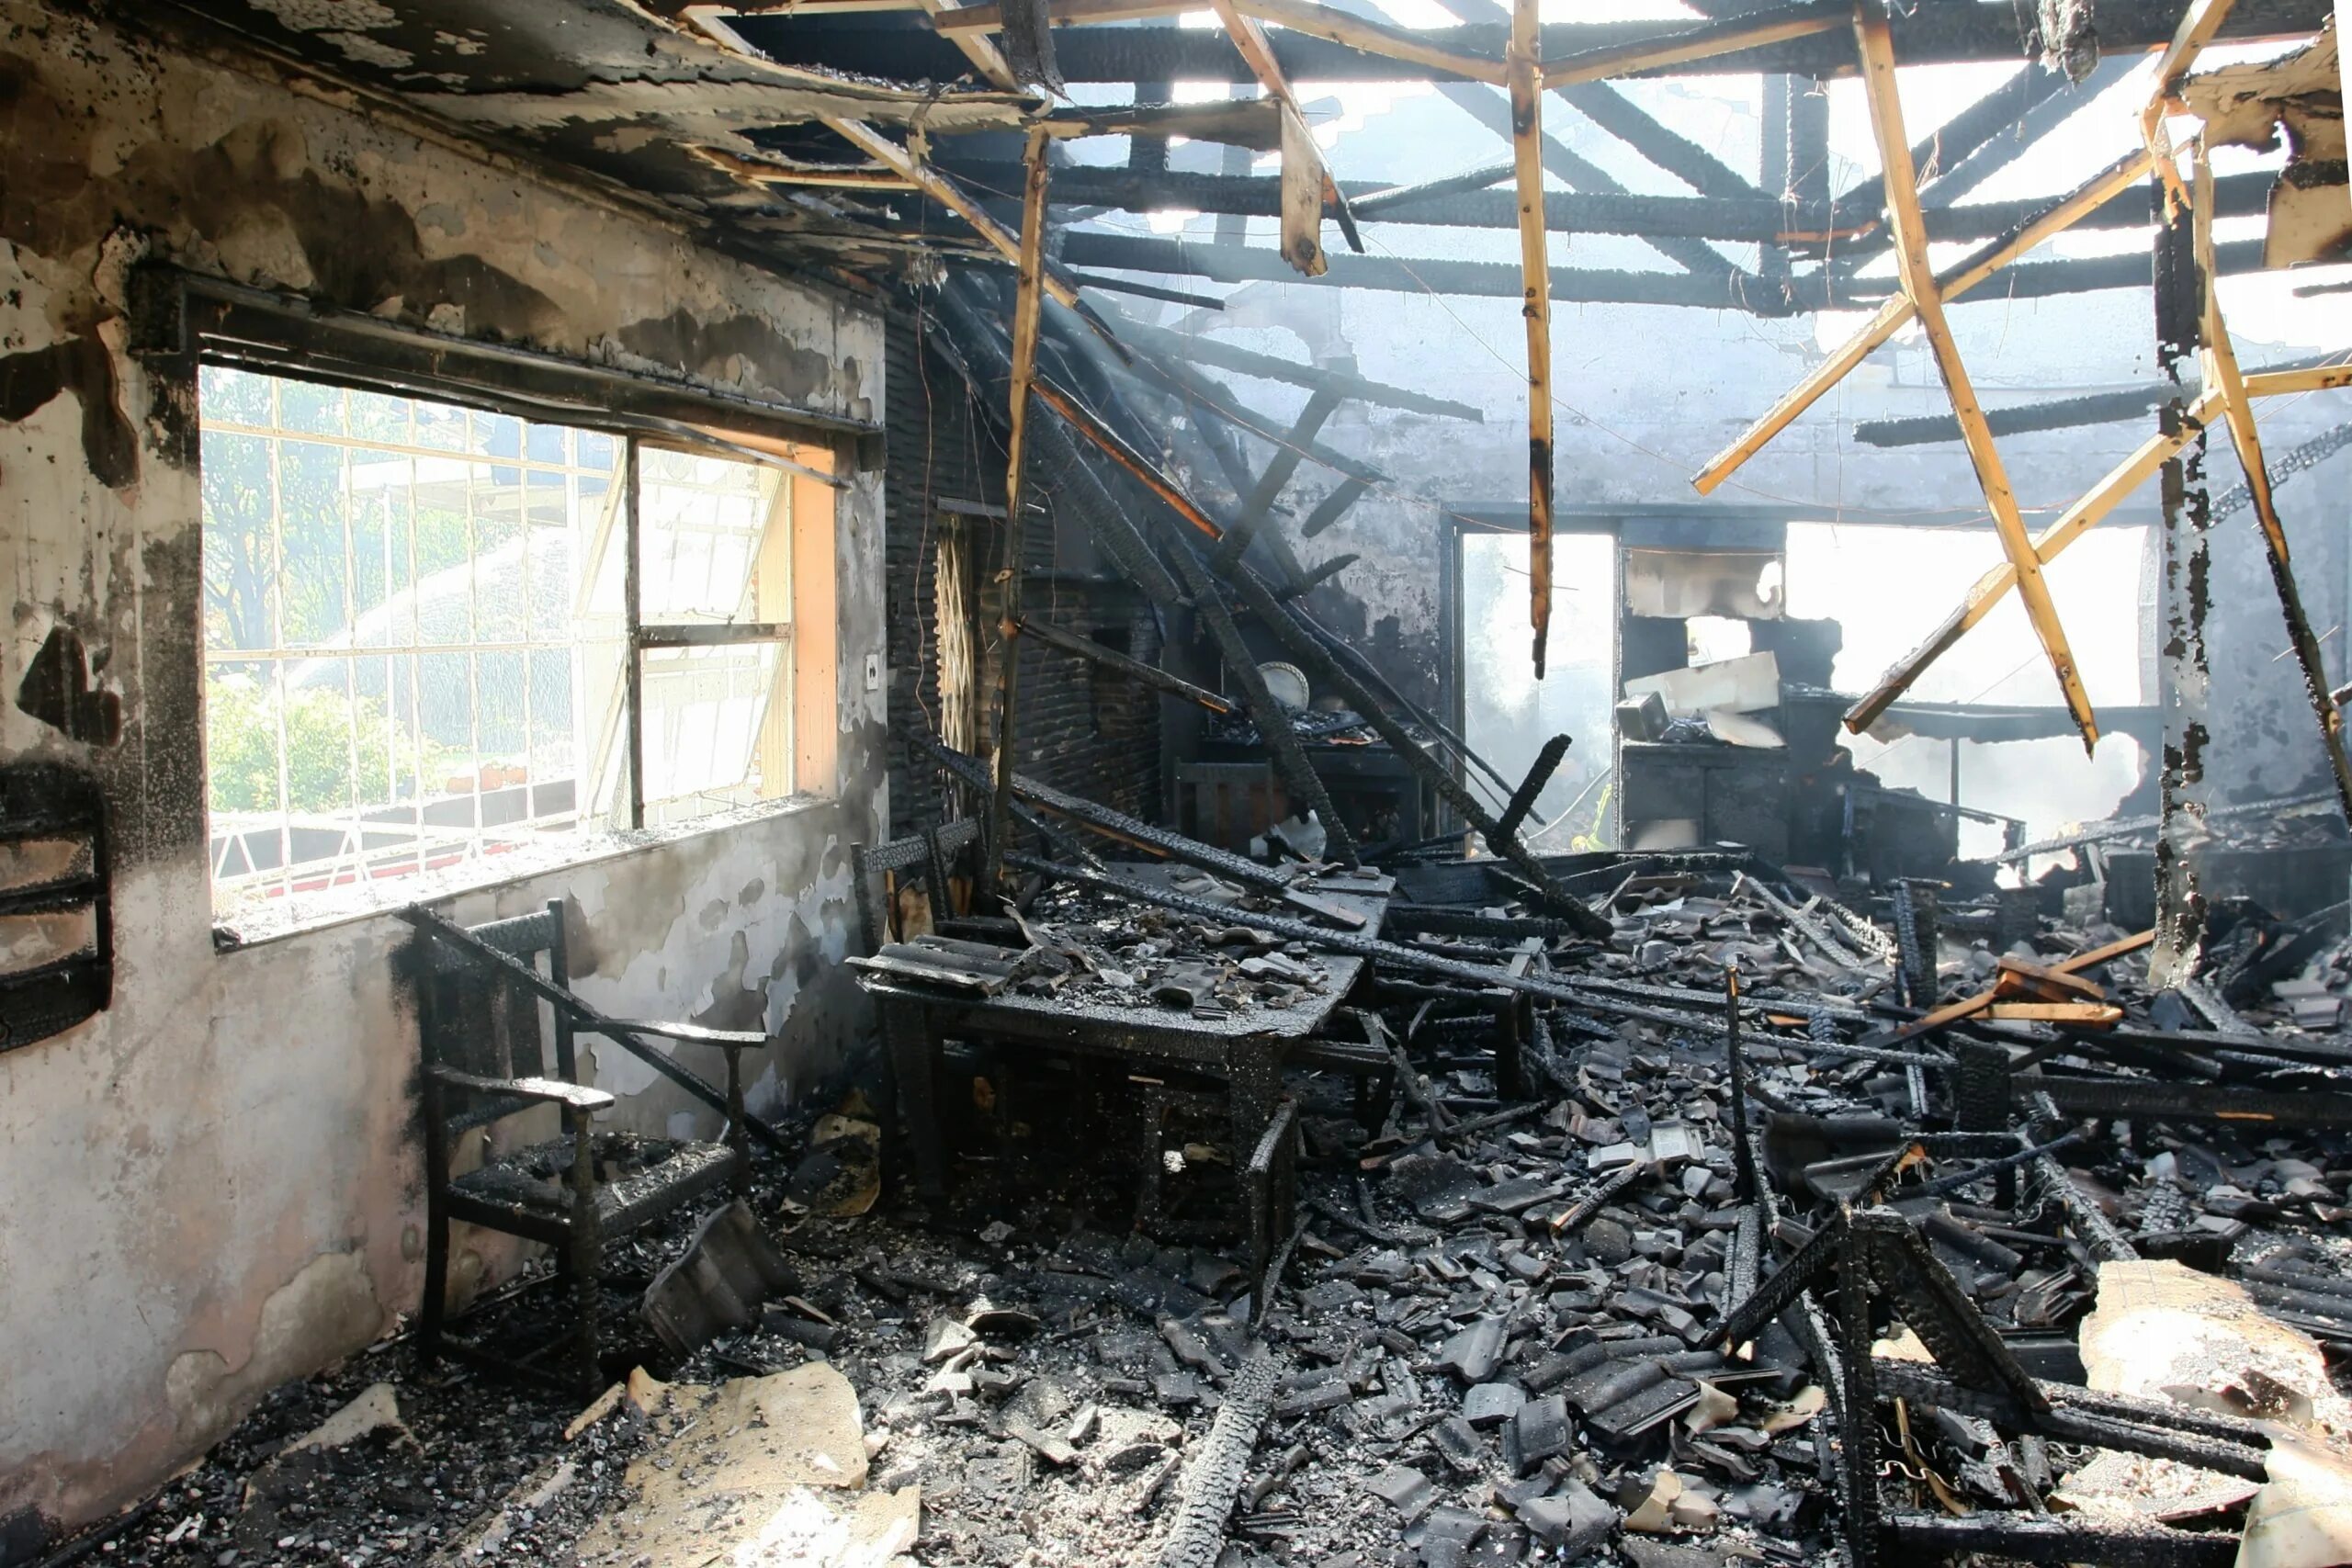 Имущество после пожара. Дом после пожара. Обгоревшие тела после пожара. Крыша дома после пожара.